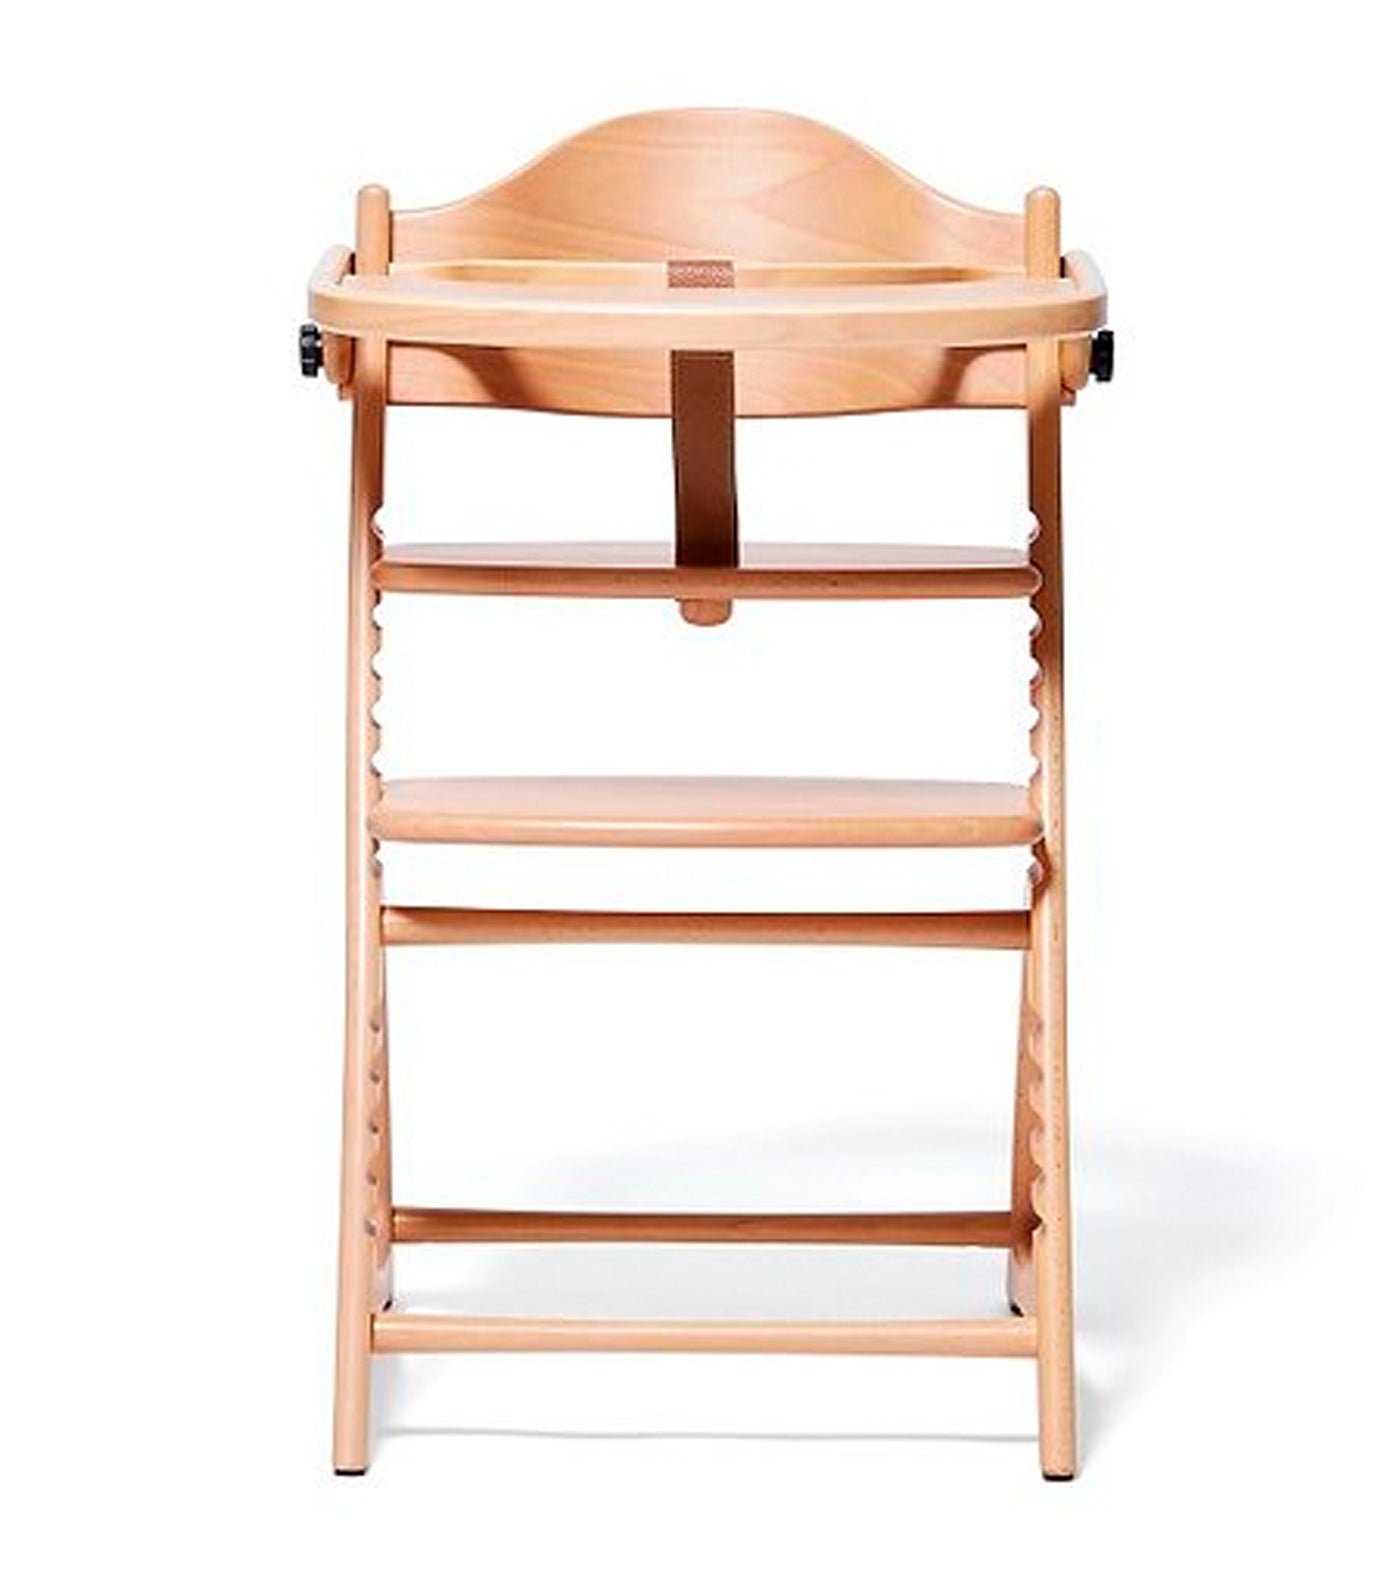 Materna Wooden High Chair - Natural